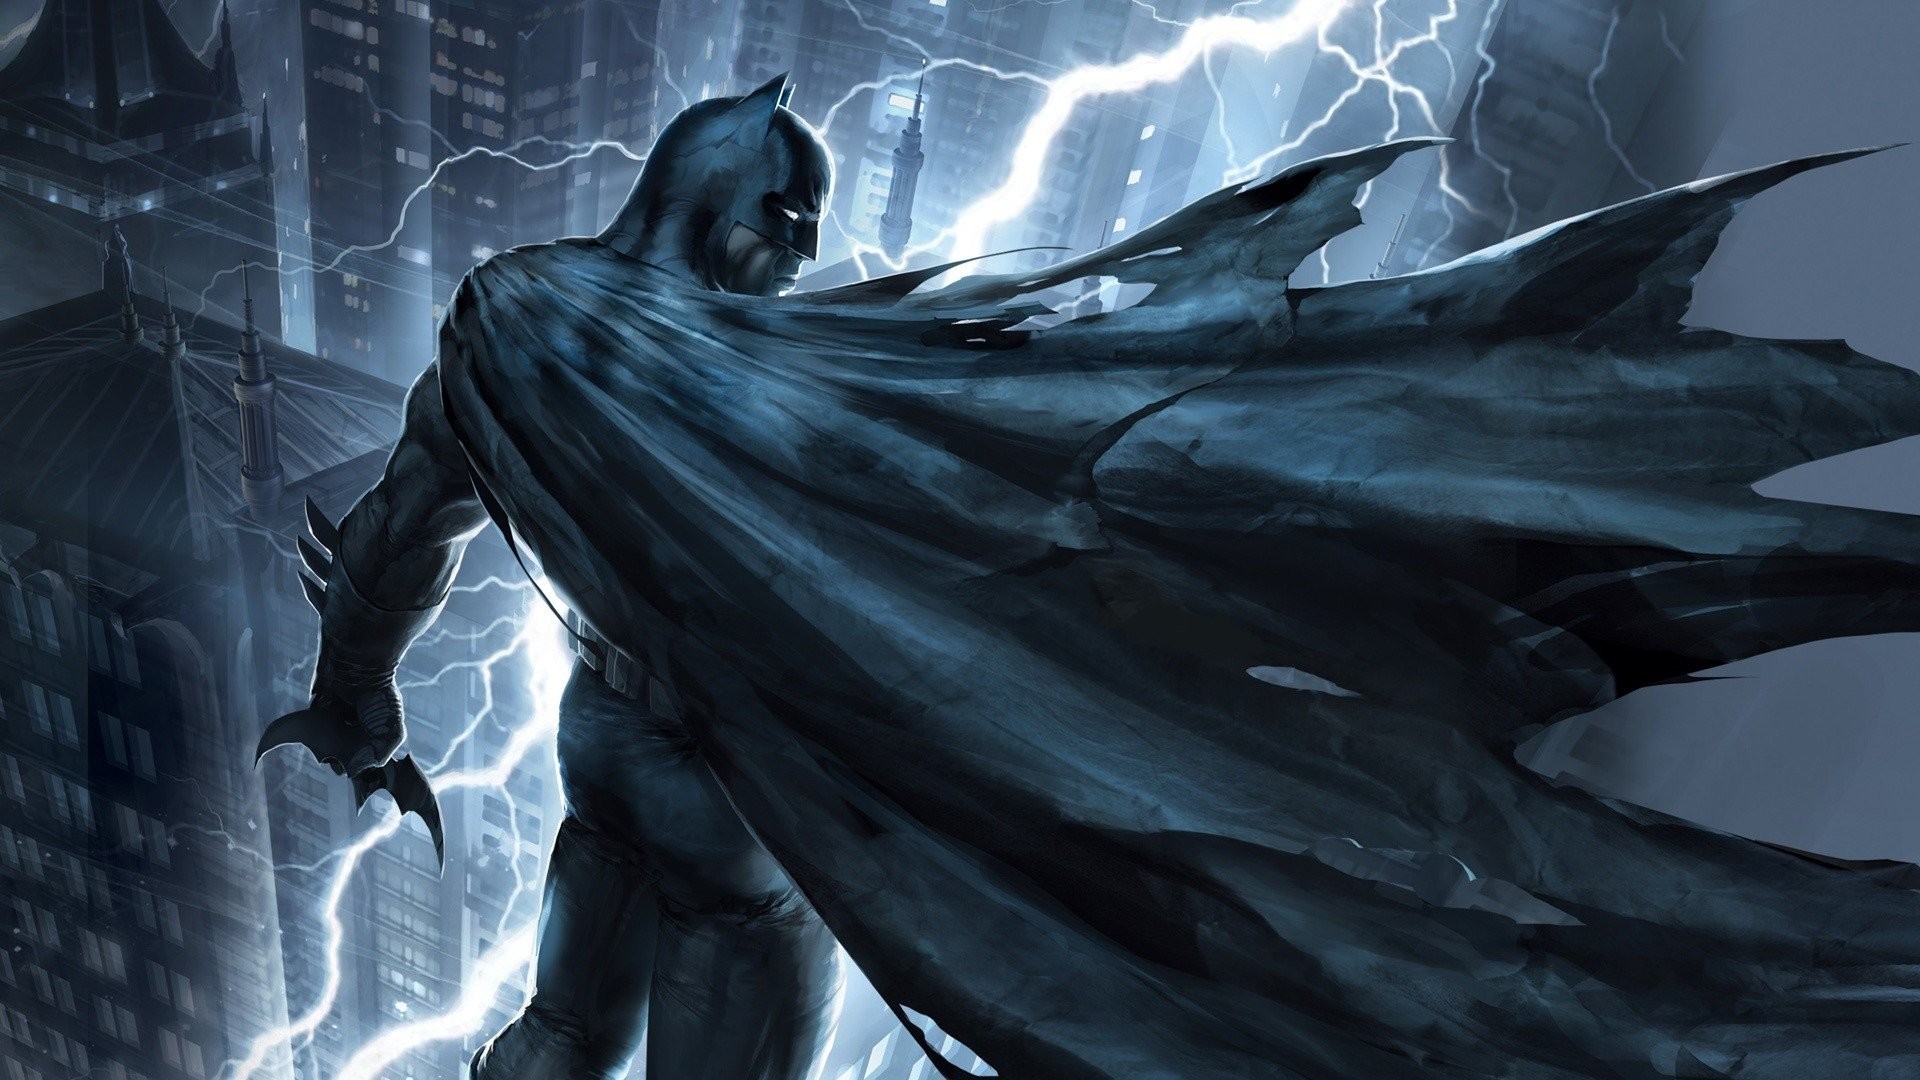 Hd Wallpaper - Batman The Dark Knight Returns - HD Wallpaper 